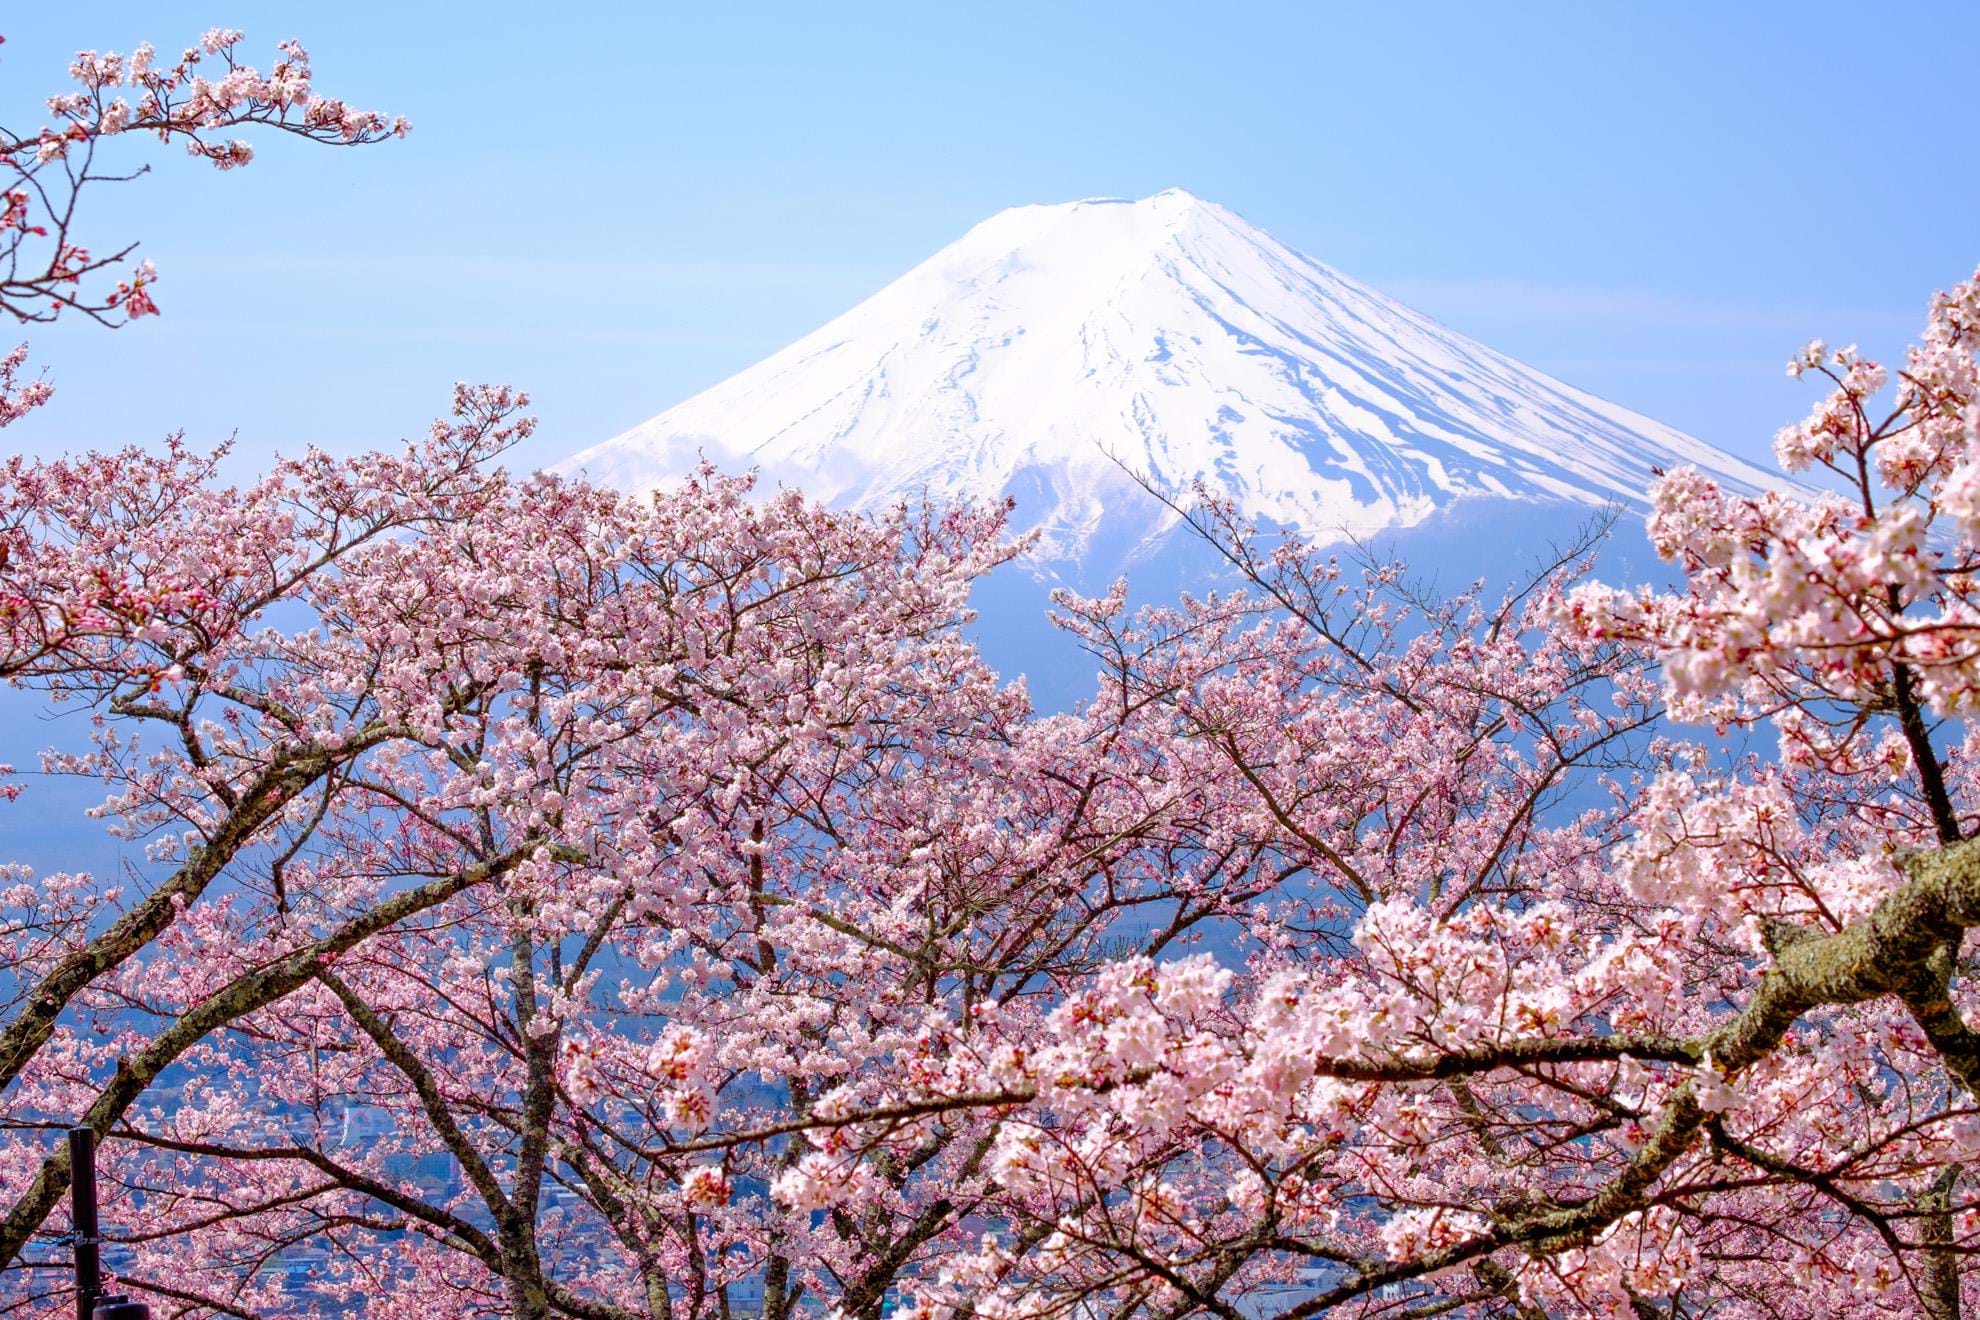 Mount Fuji | TransIndus